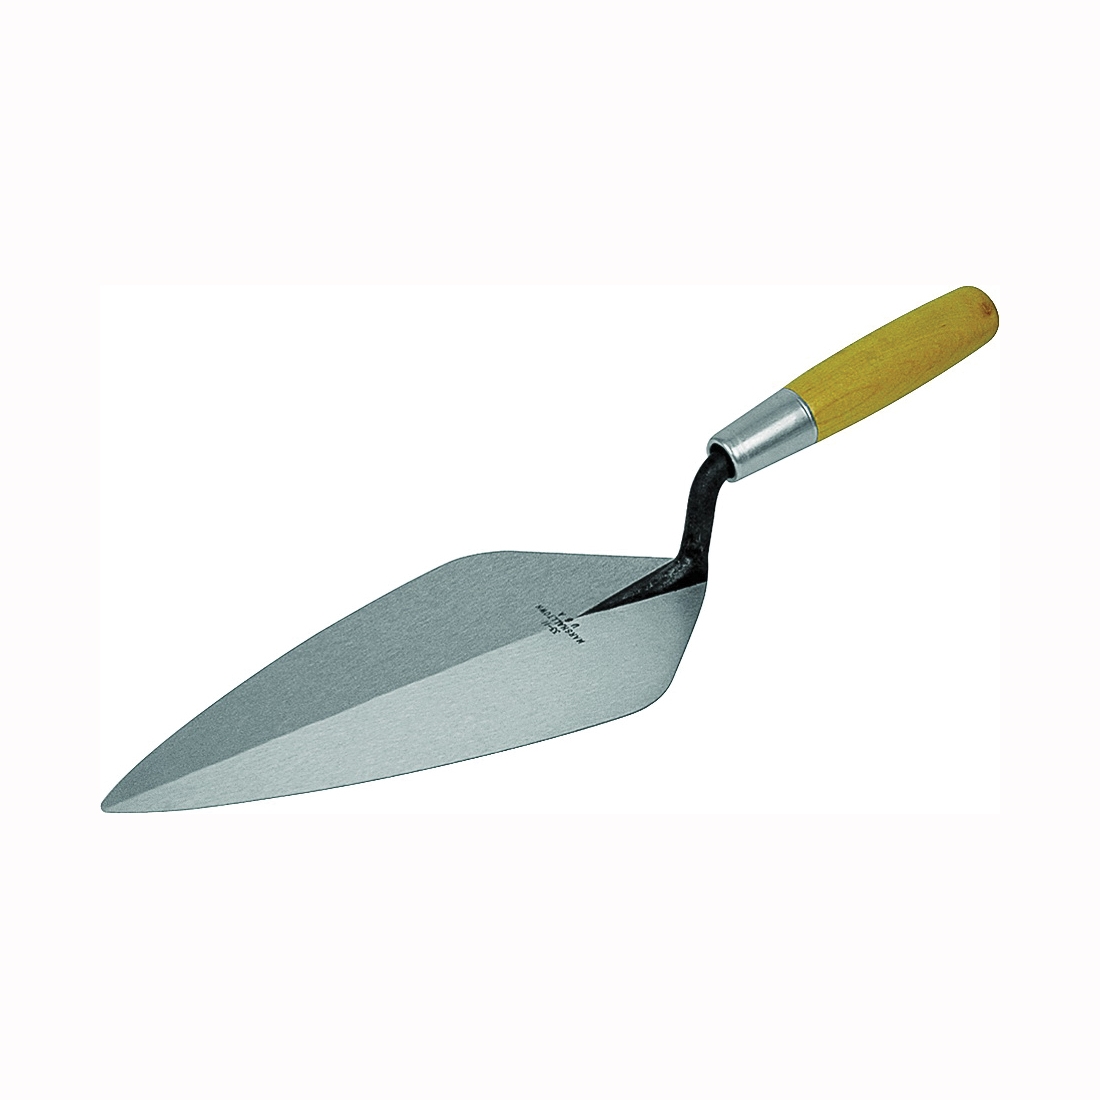 33 11.5 Brick Trowel, 11-1/2 in L Blade, 5 in W Blade, Steel Blade, Wood Handle